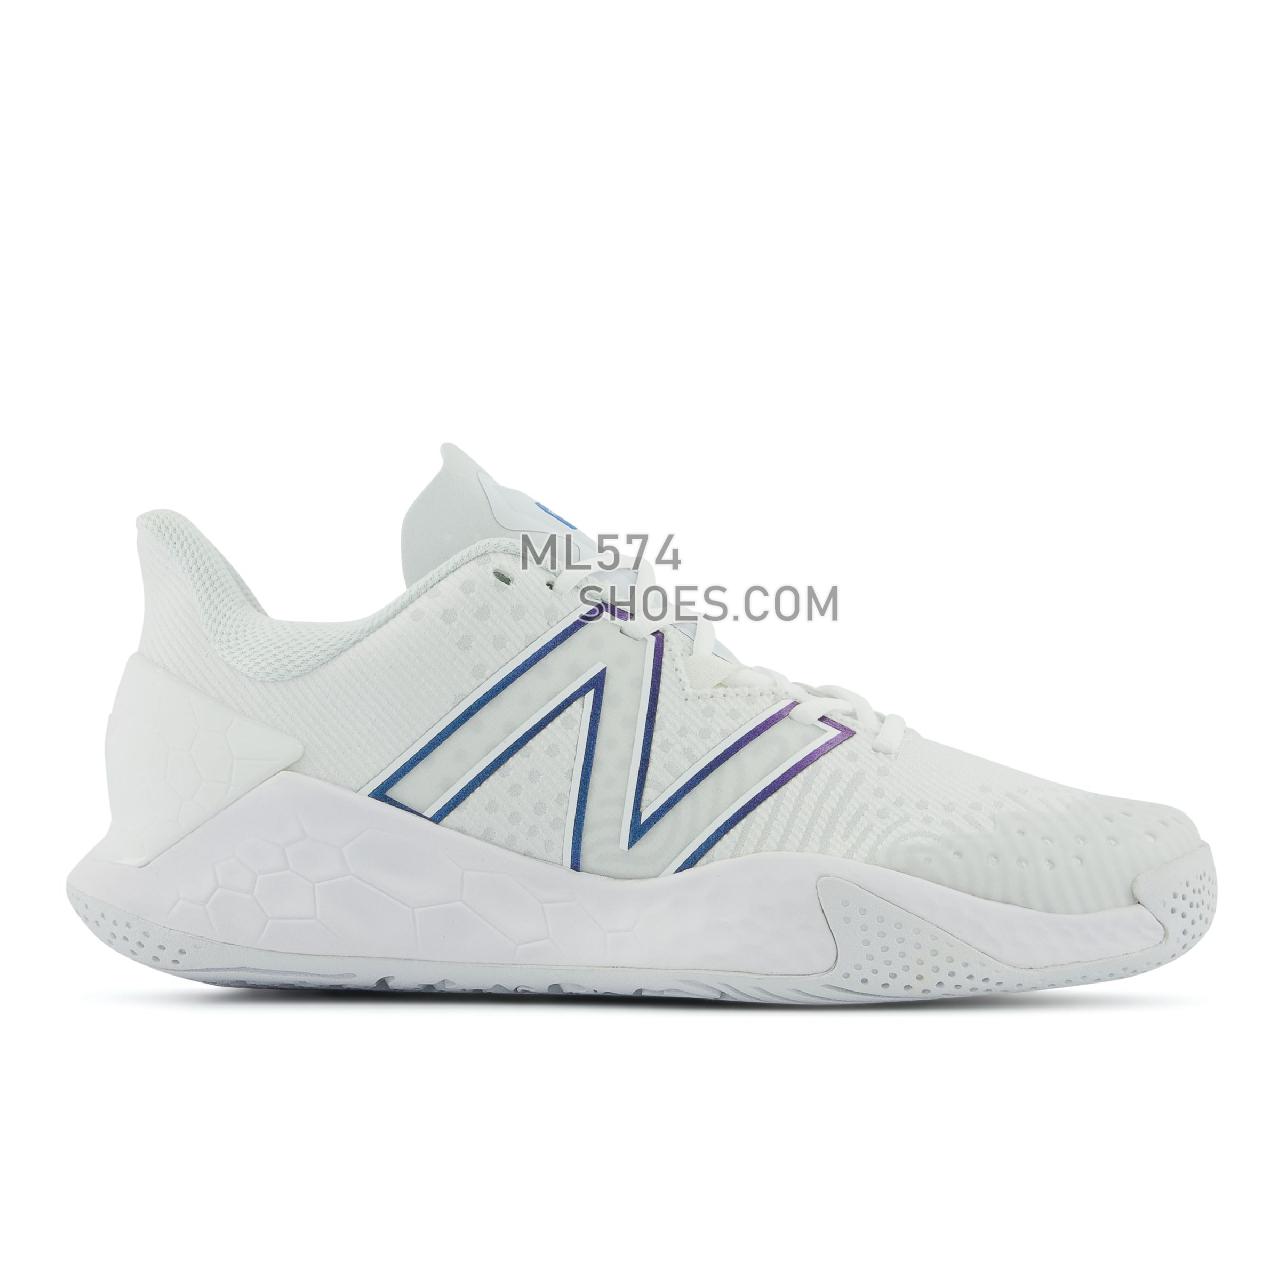 New Balance Fresh Foam X Lav V2 - Men's Tennis - White with Laser Blue - MCHLAVL2